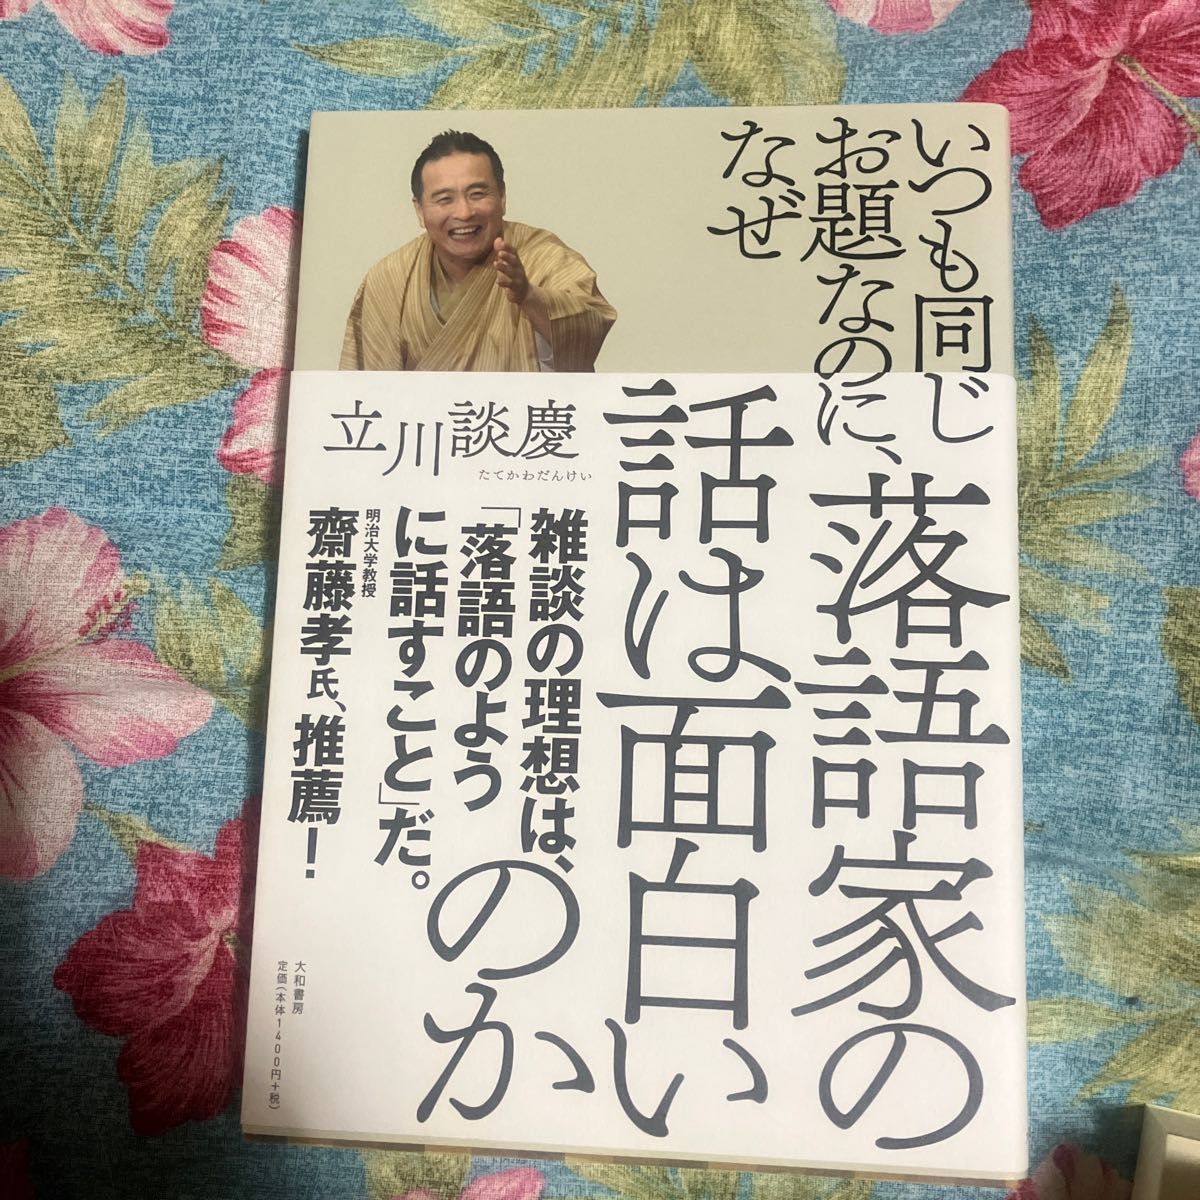 おもしろい落語家の本 談志 鯉昇 歌蔵 談慶